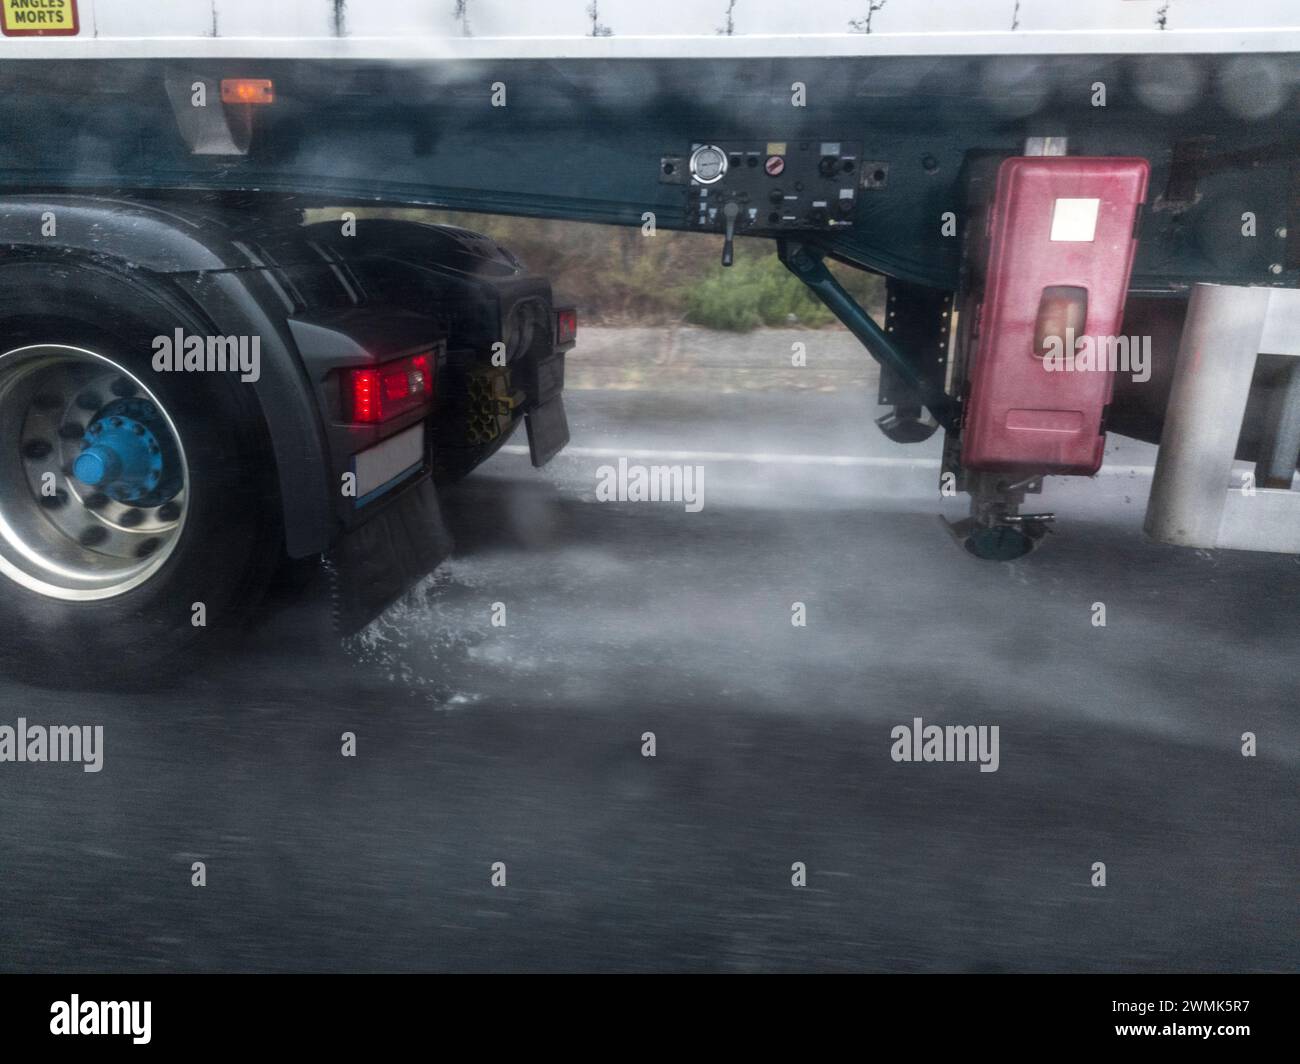 Le ruote del camion spruzzano acqua su strada. Pericoli durante la guida in prossimità di autocarri Foto Stock